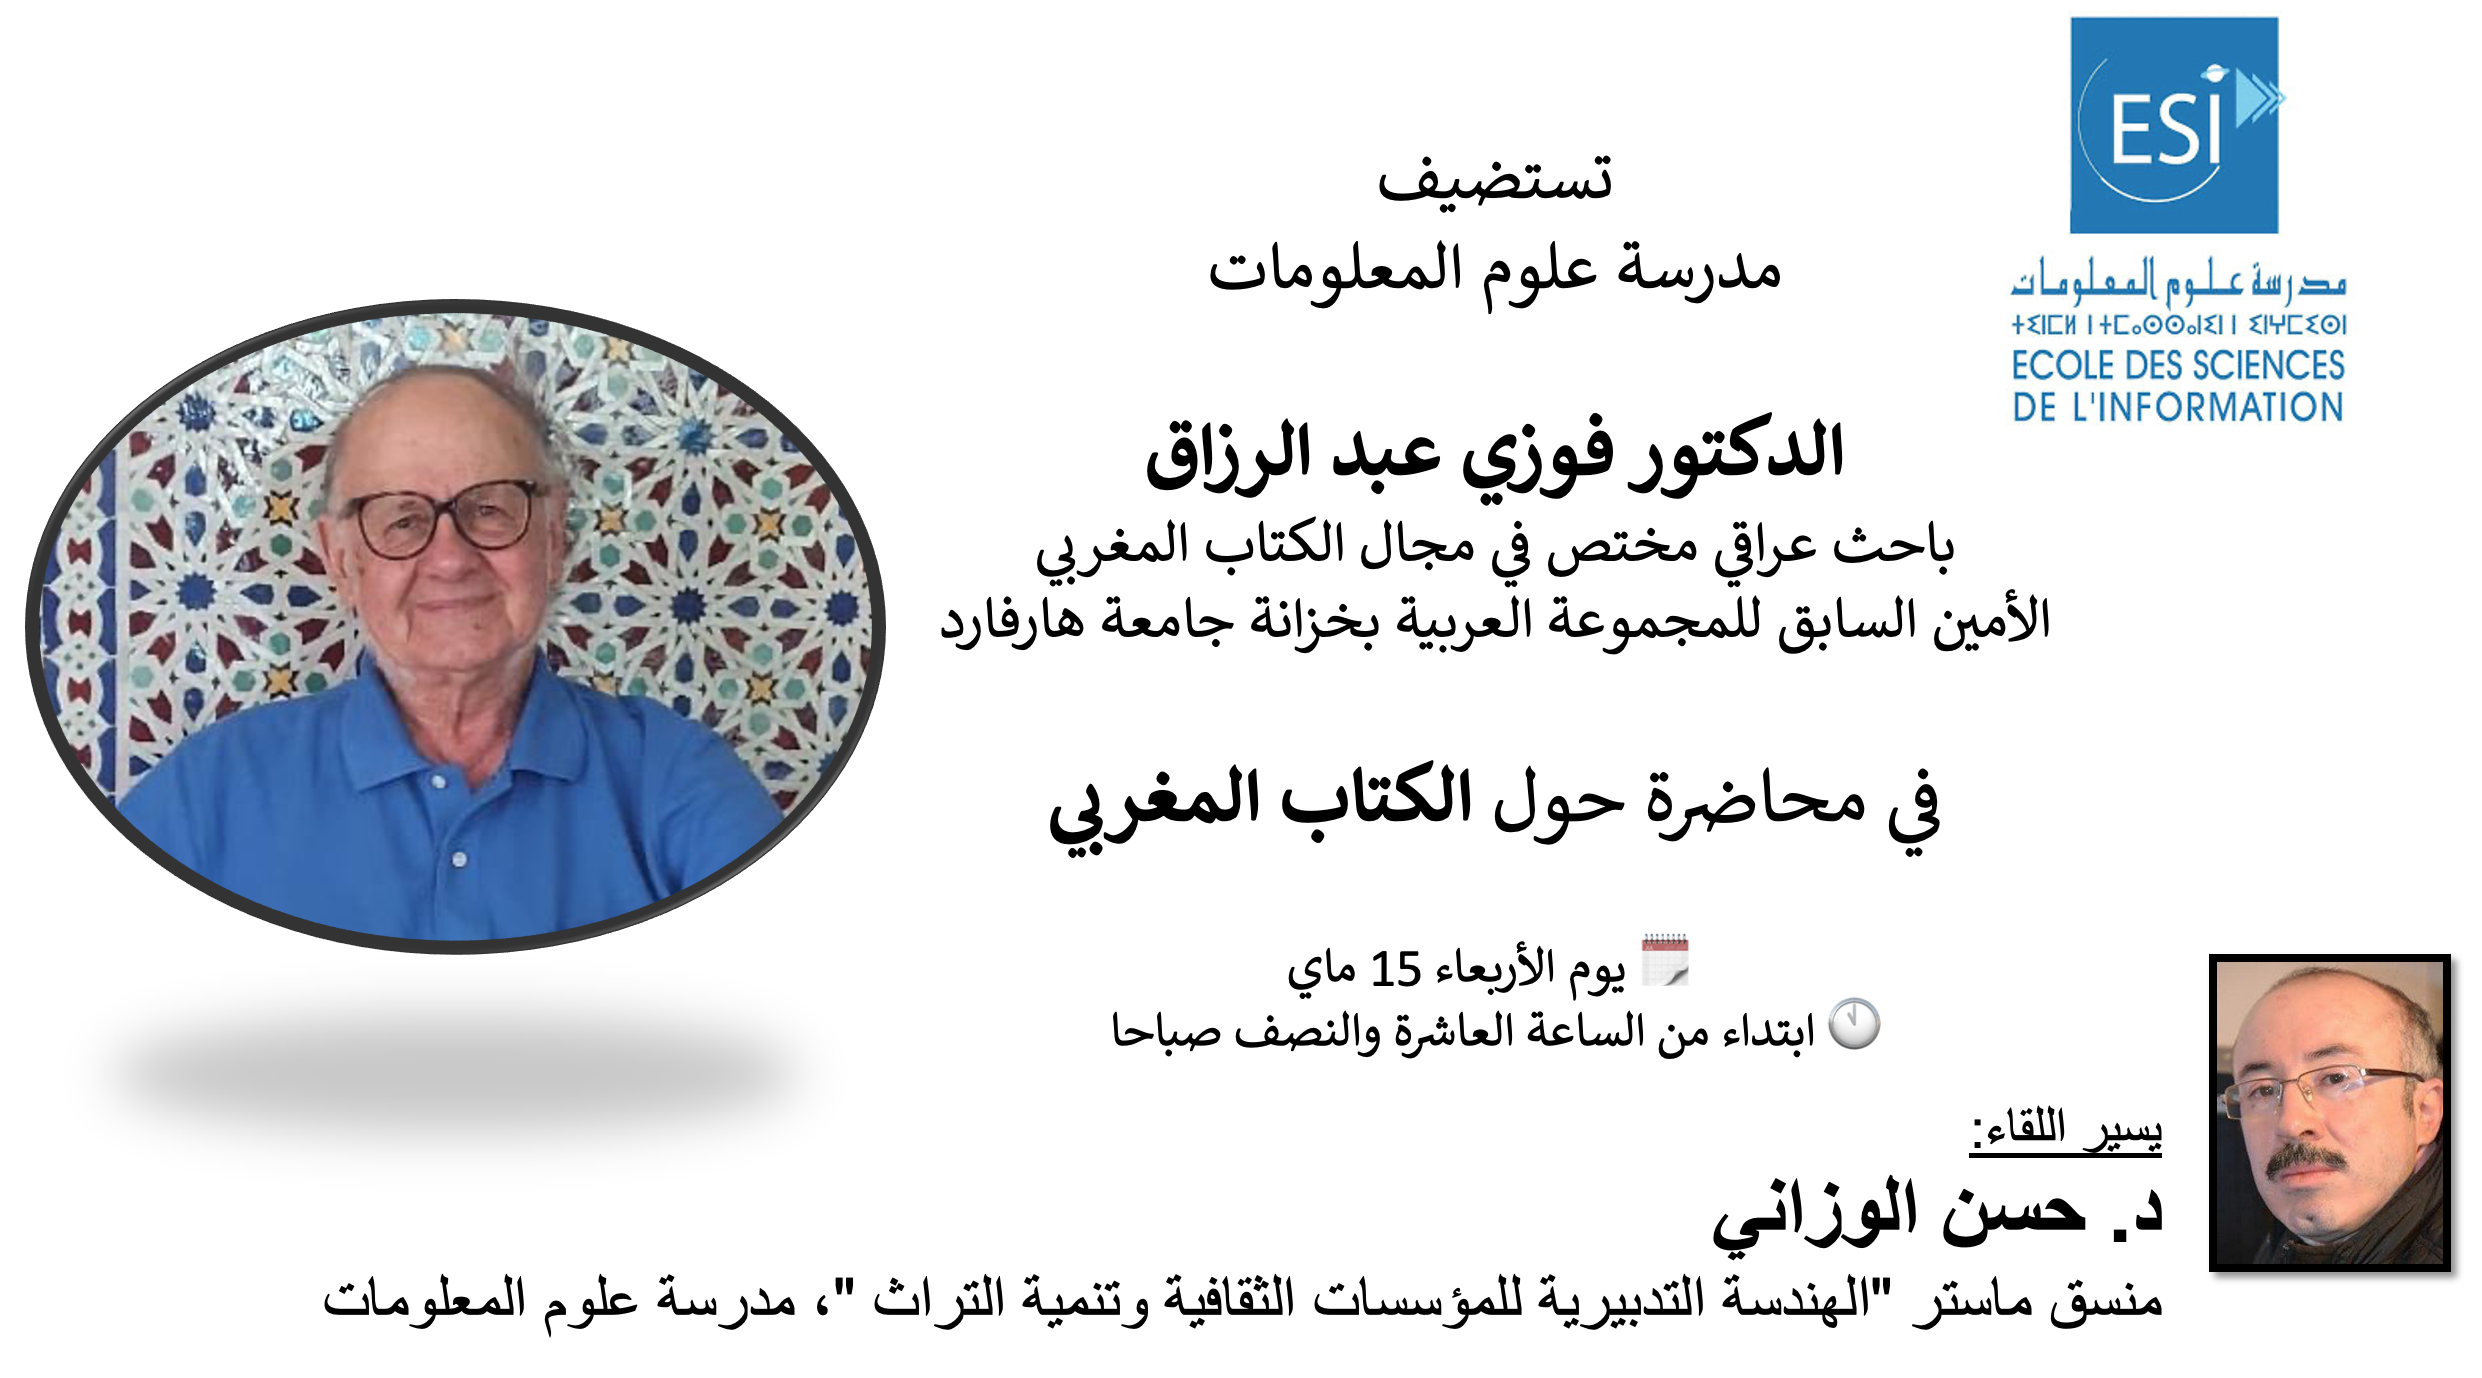  محاضرة حول الكتاب المغربي يلقيها الباحث العراقي الدكتور فوزي عبد الرزاق